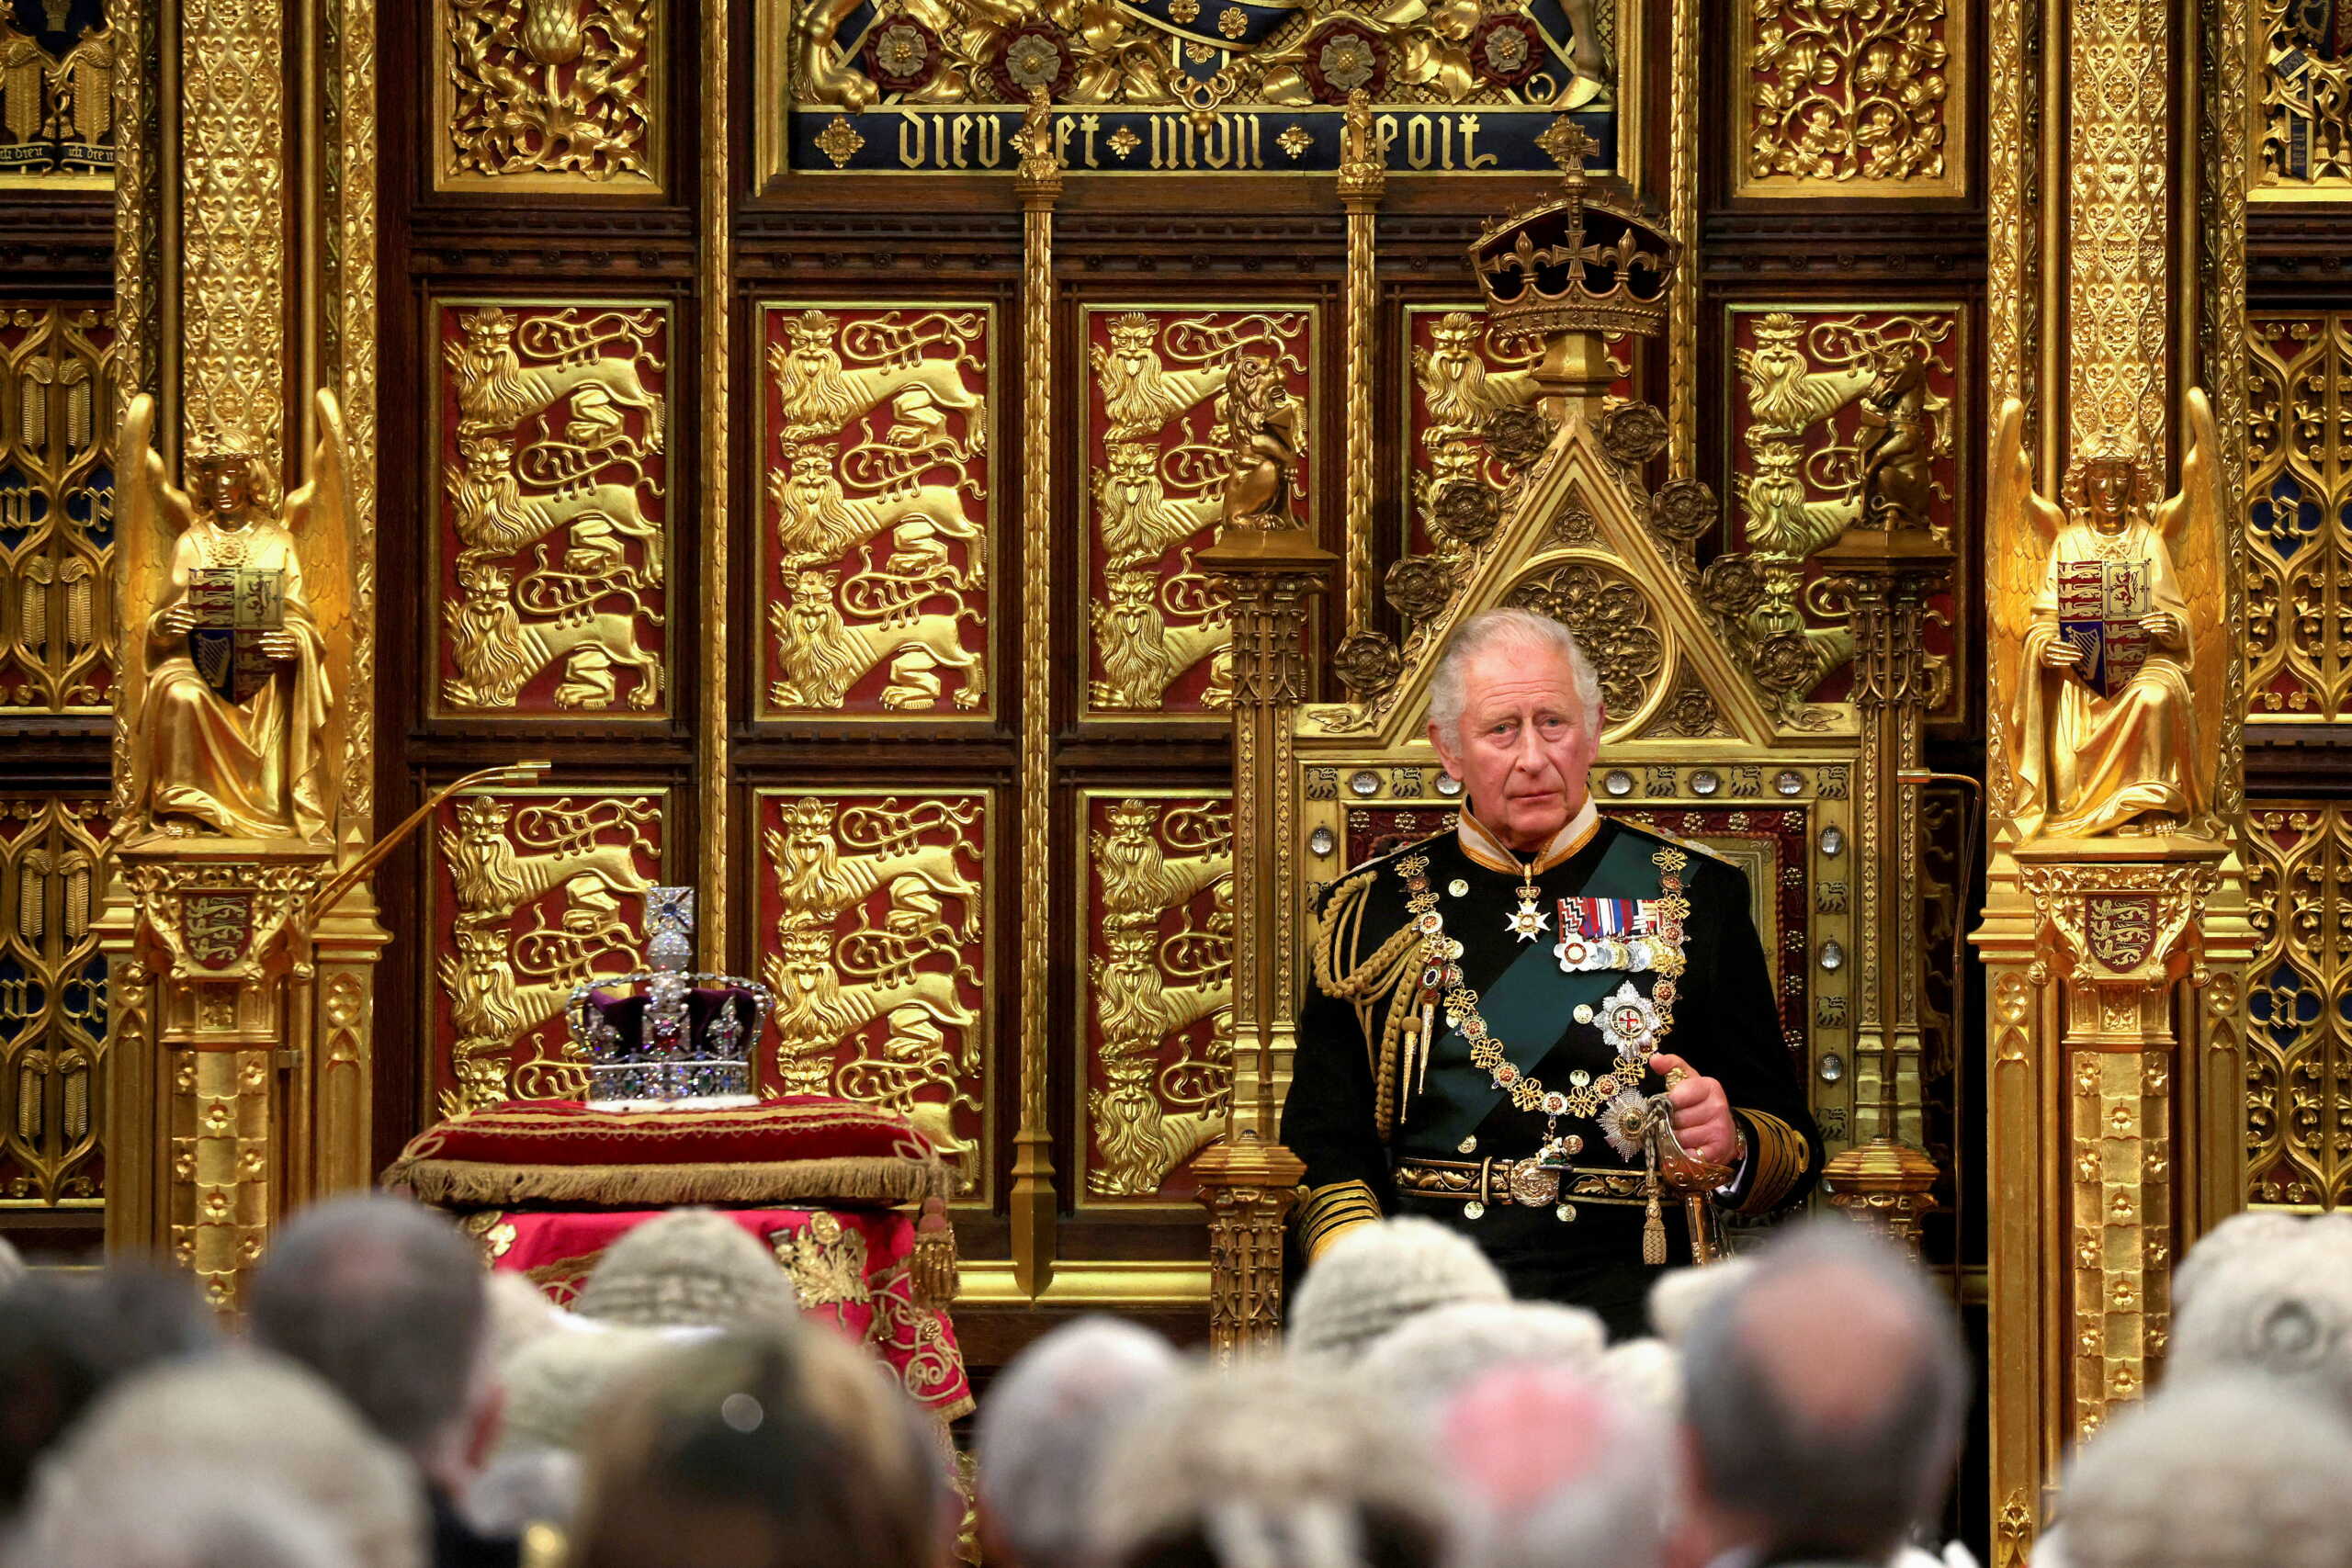 Επίσημη πρώτη για τον Πρίγκιπα Κάρολο στην θέση της Βασίλισσας Ελισάβετ στο Κοινοβούλιο